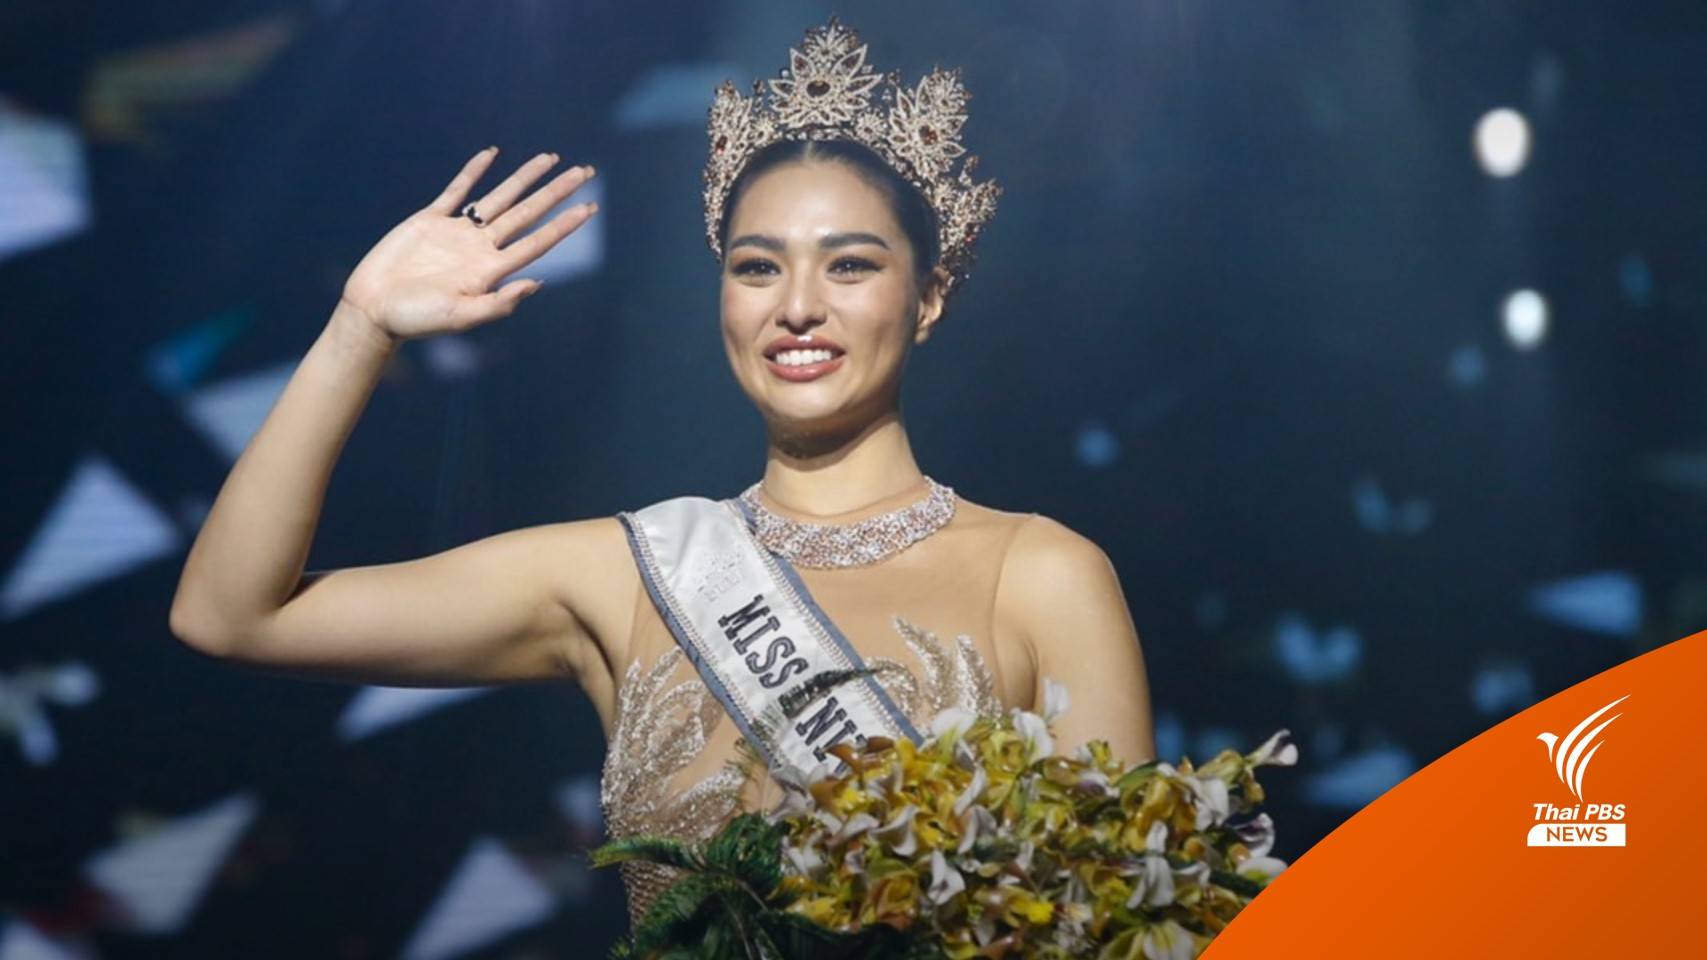 "แอนชิลี" Miss Universe Thailand 2021 กับมาตรฐานความงามแบบใหม่